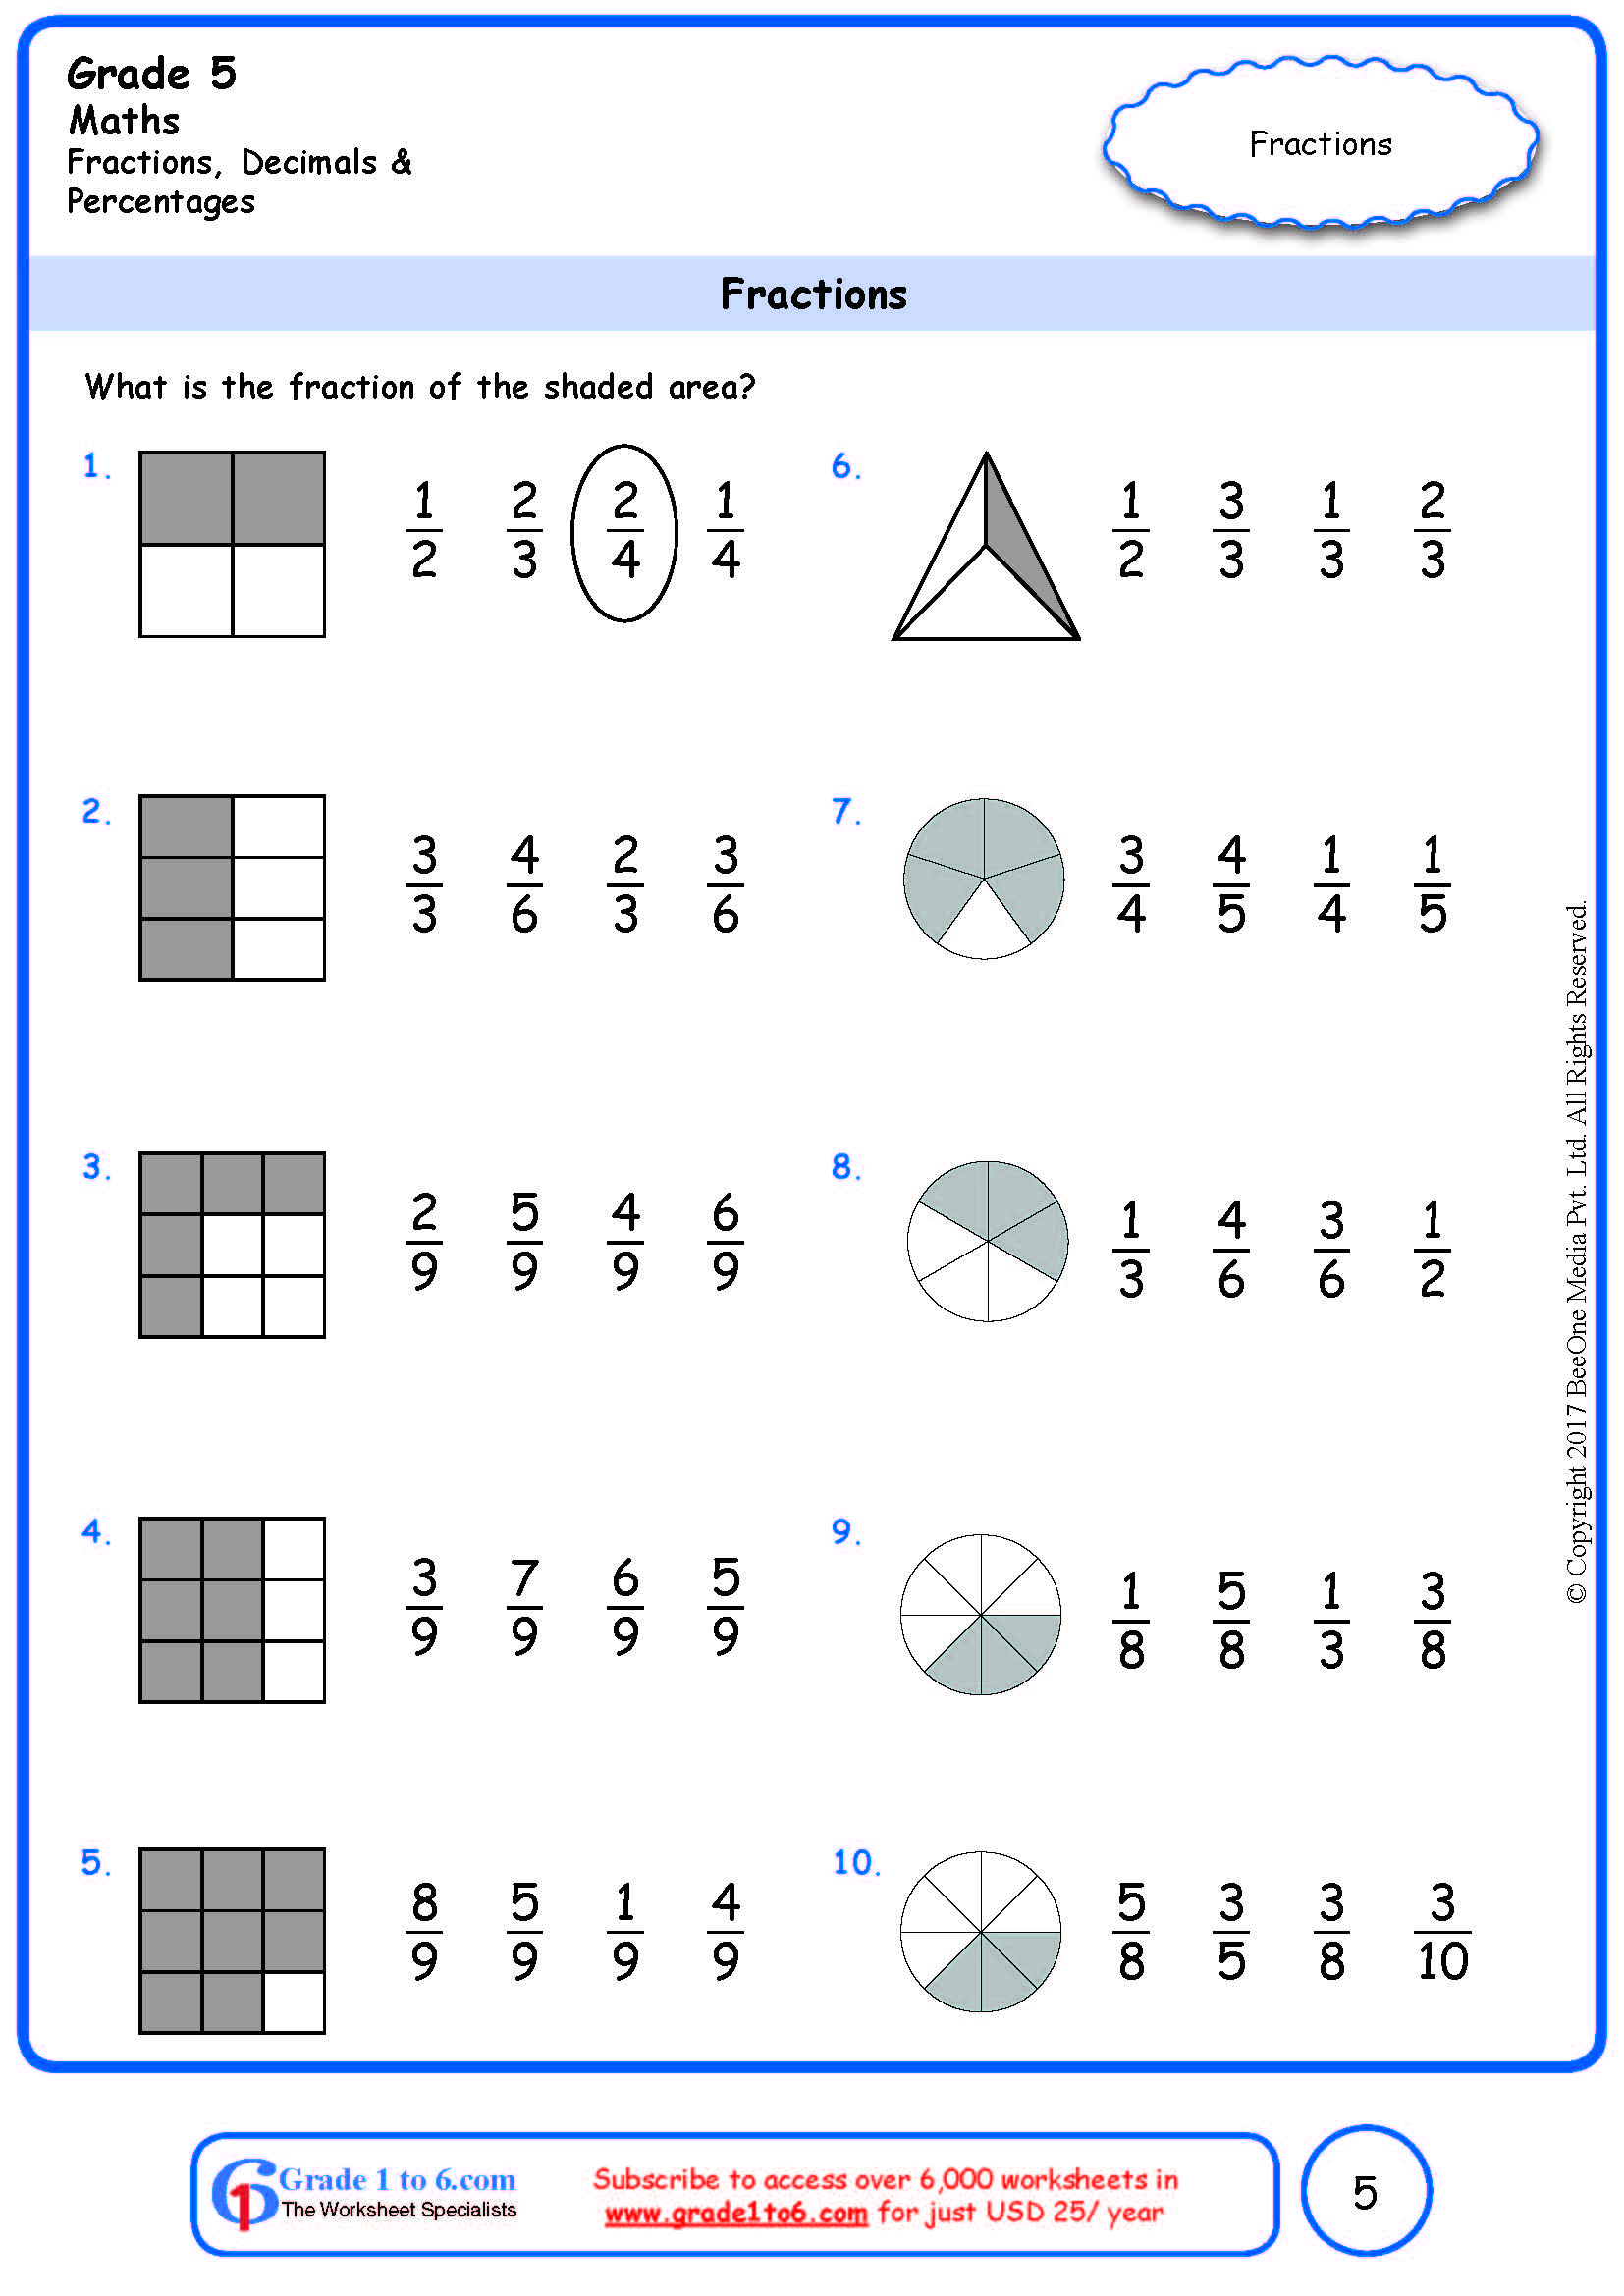 fractions-worksheets-grade-5